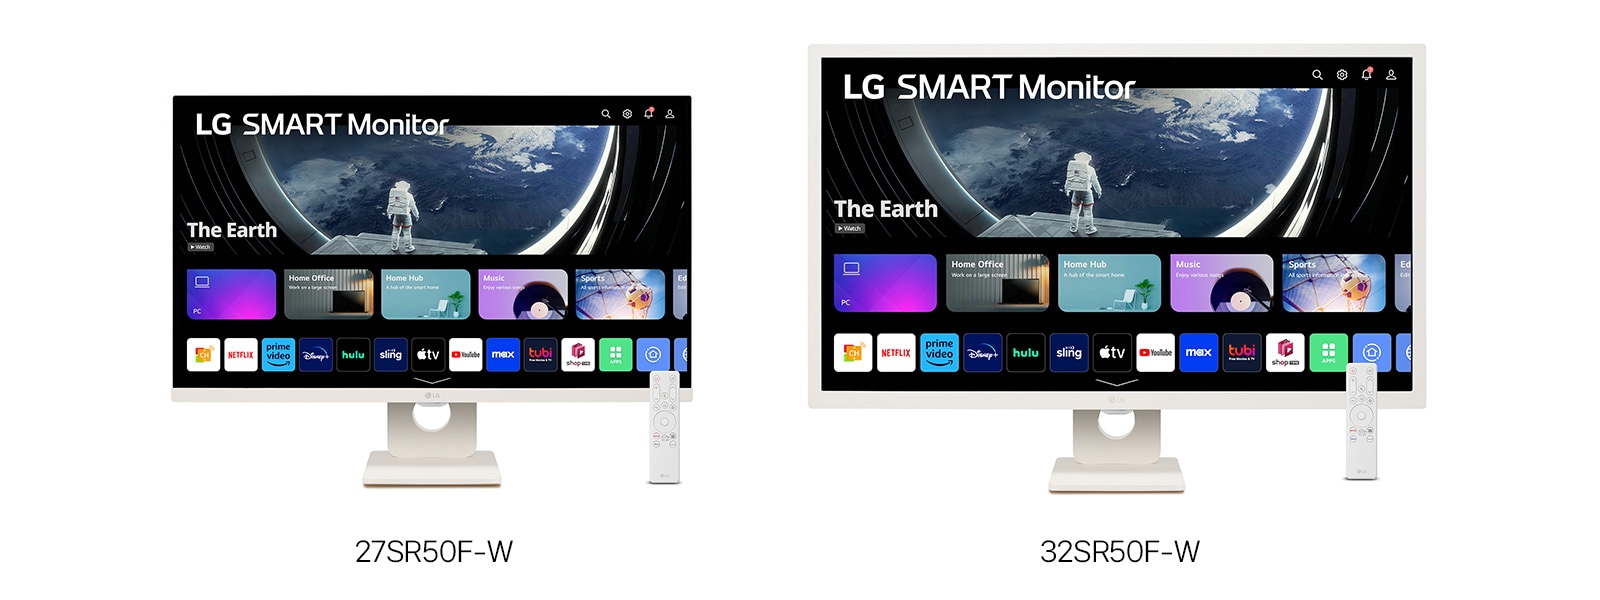 LG SMART Monitor「27SR50F-W」、「32SR50F-W」を本格販売開始